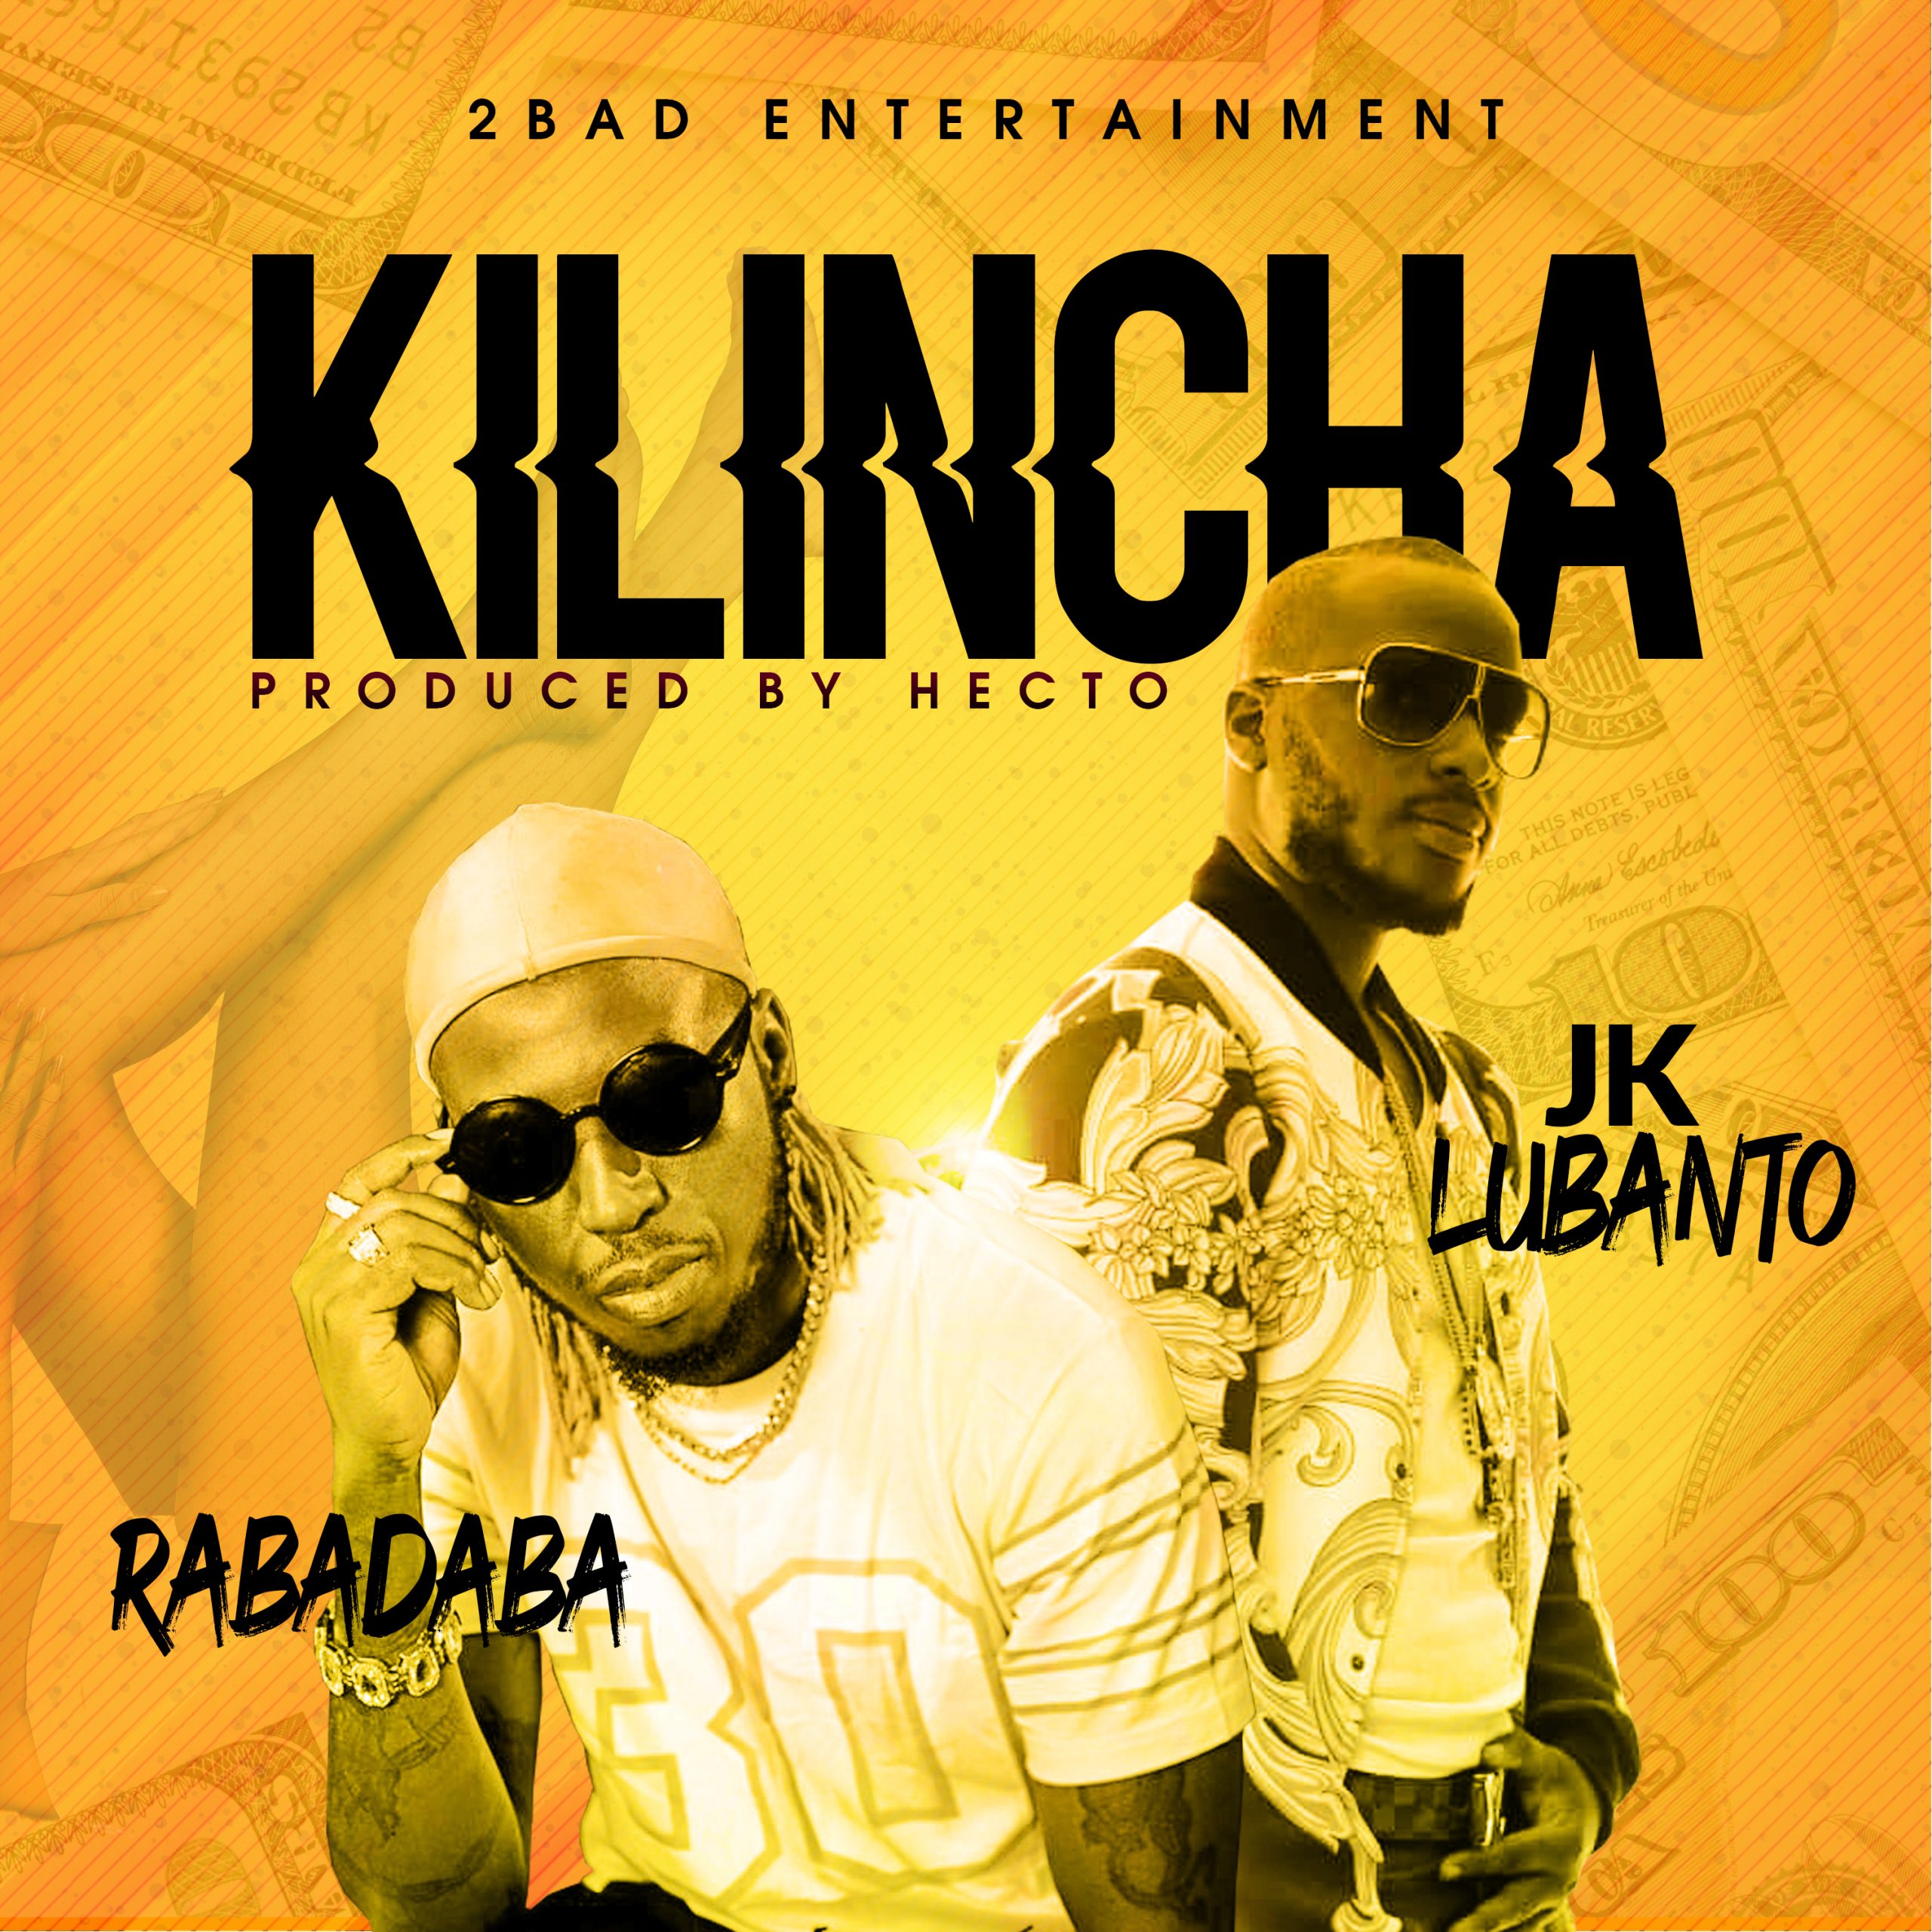 JK Lubanto has released “Klincha” ft. Rabadaba